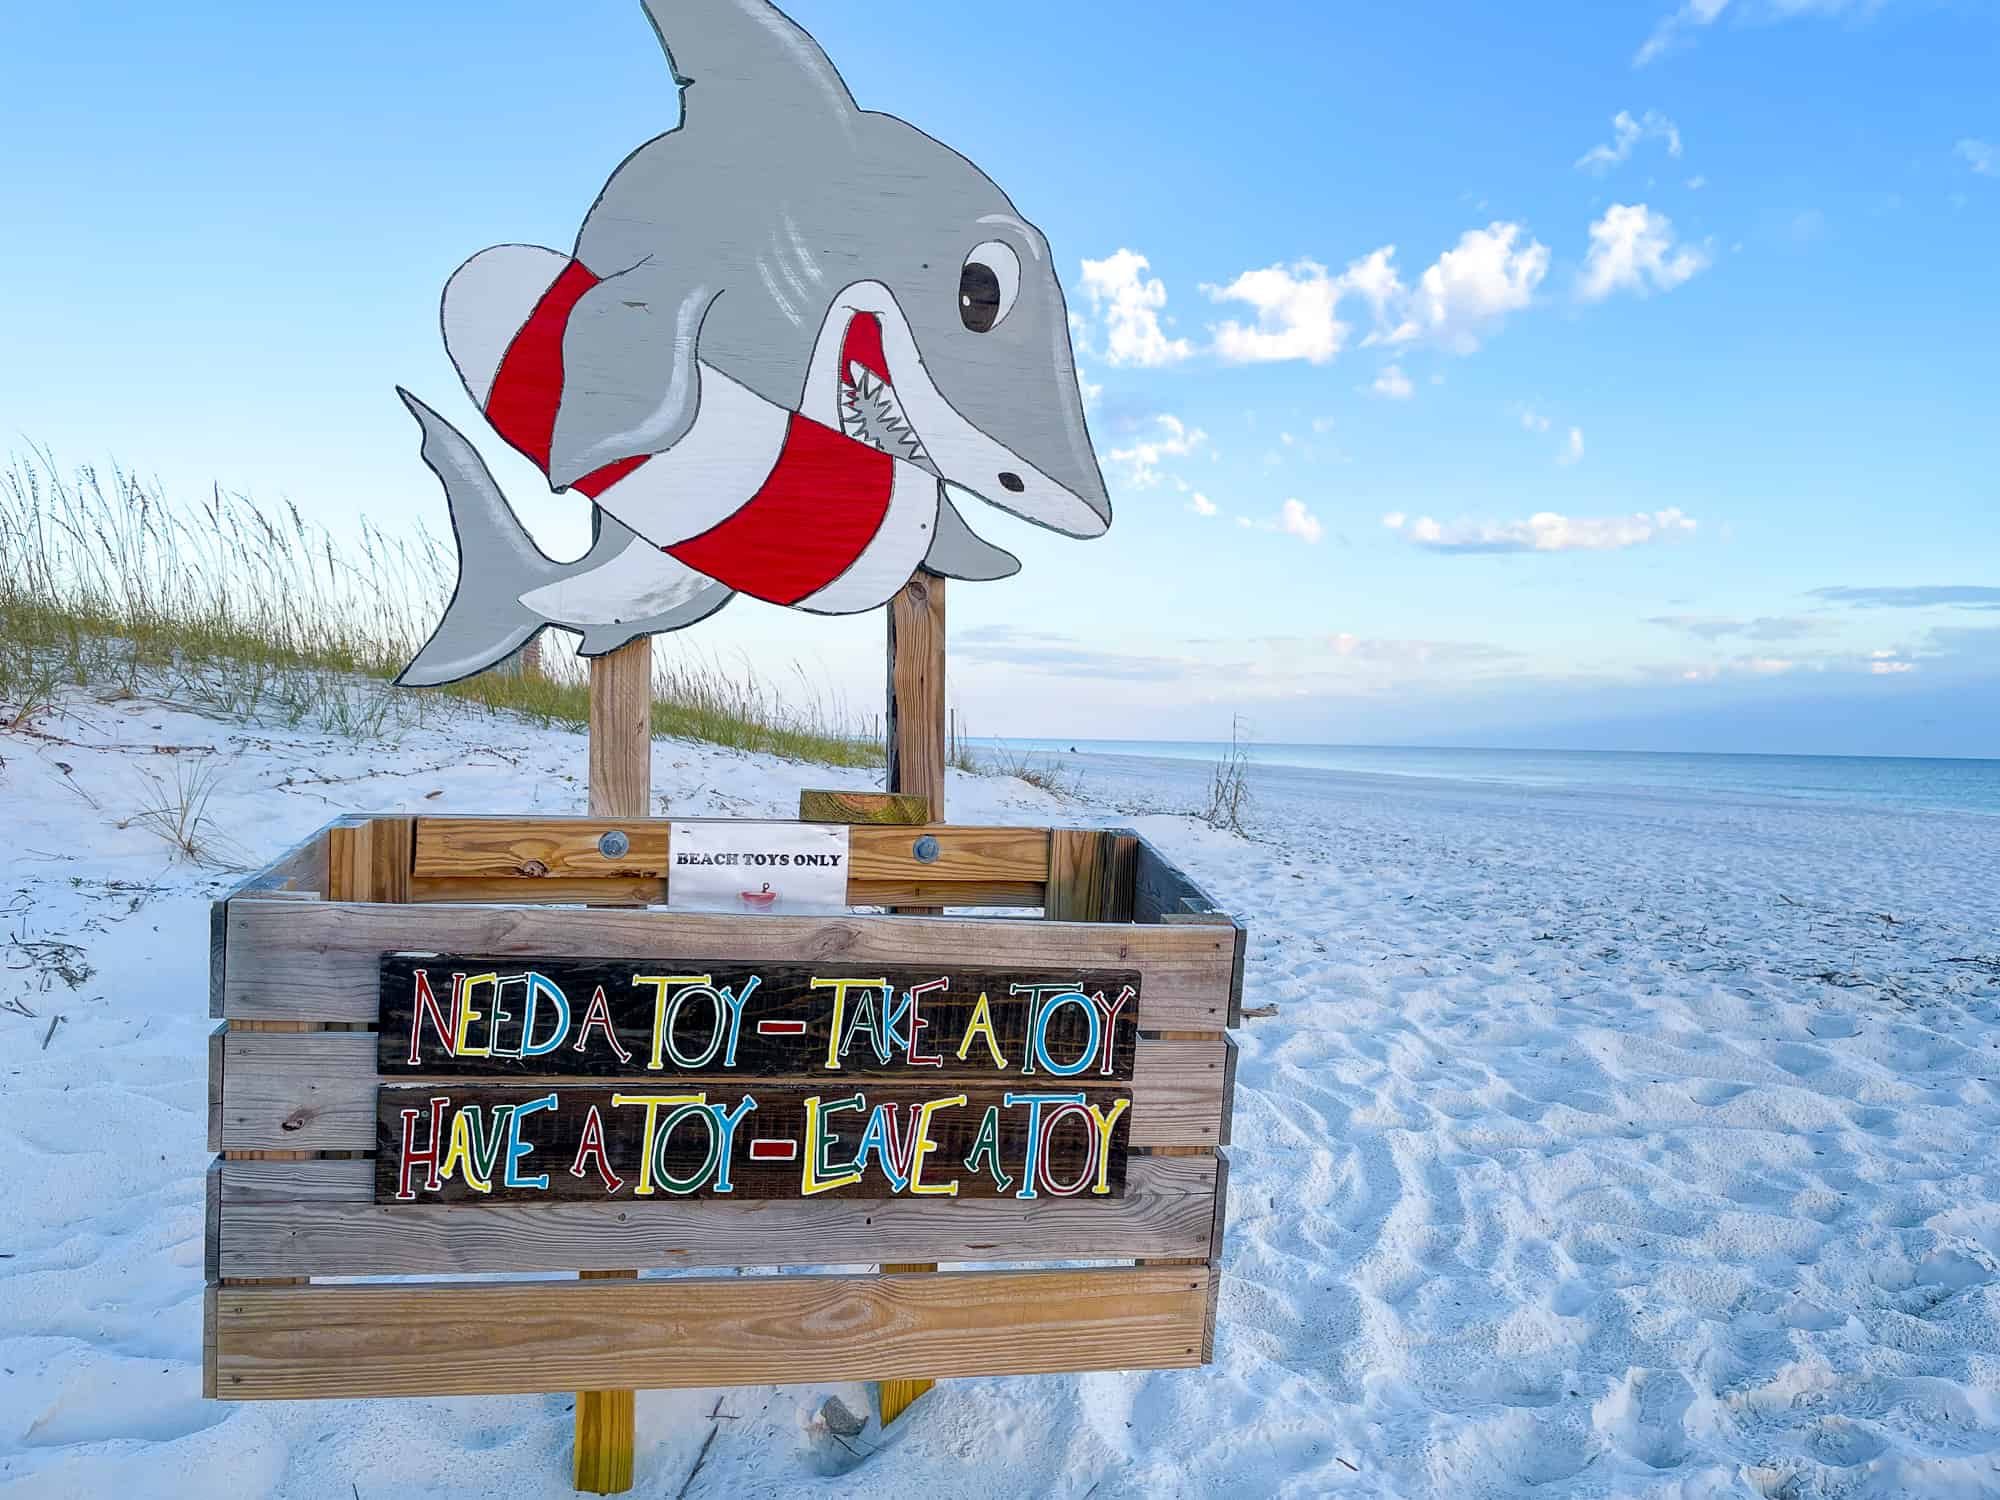 Sustainable beach tips - share beach toys box on a sandy beach in Alabama